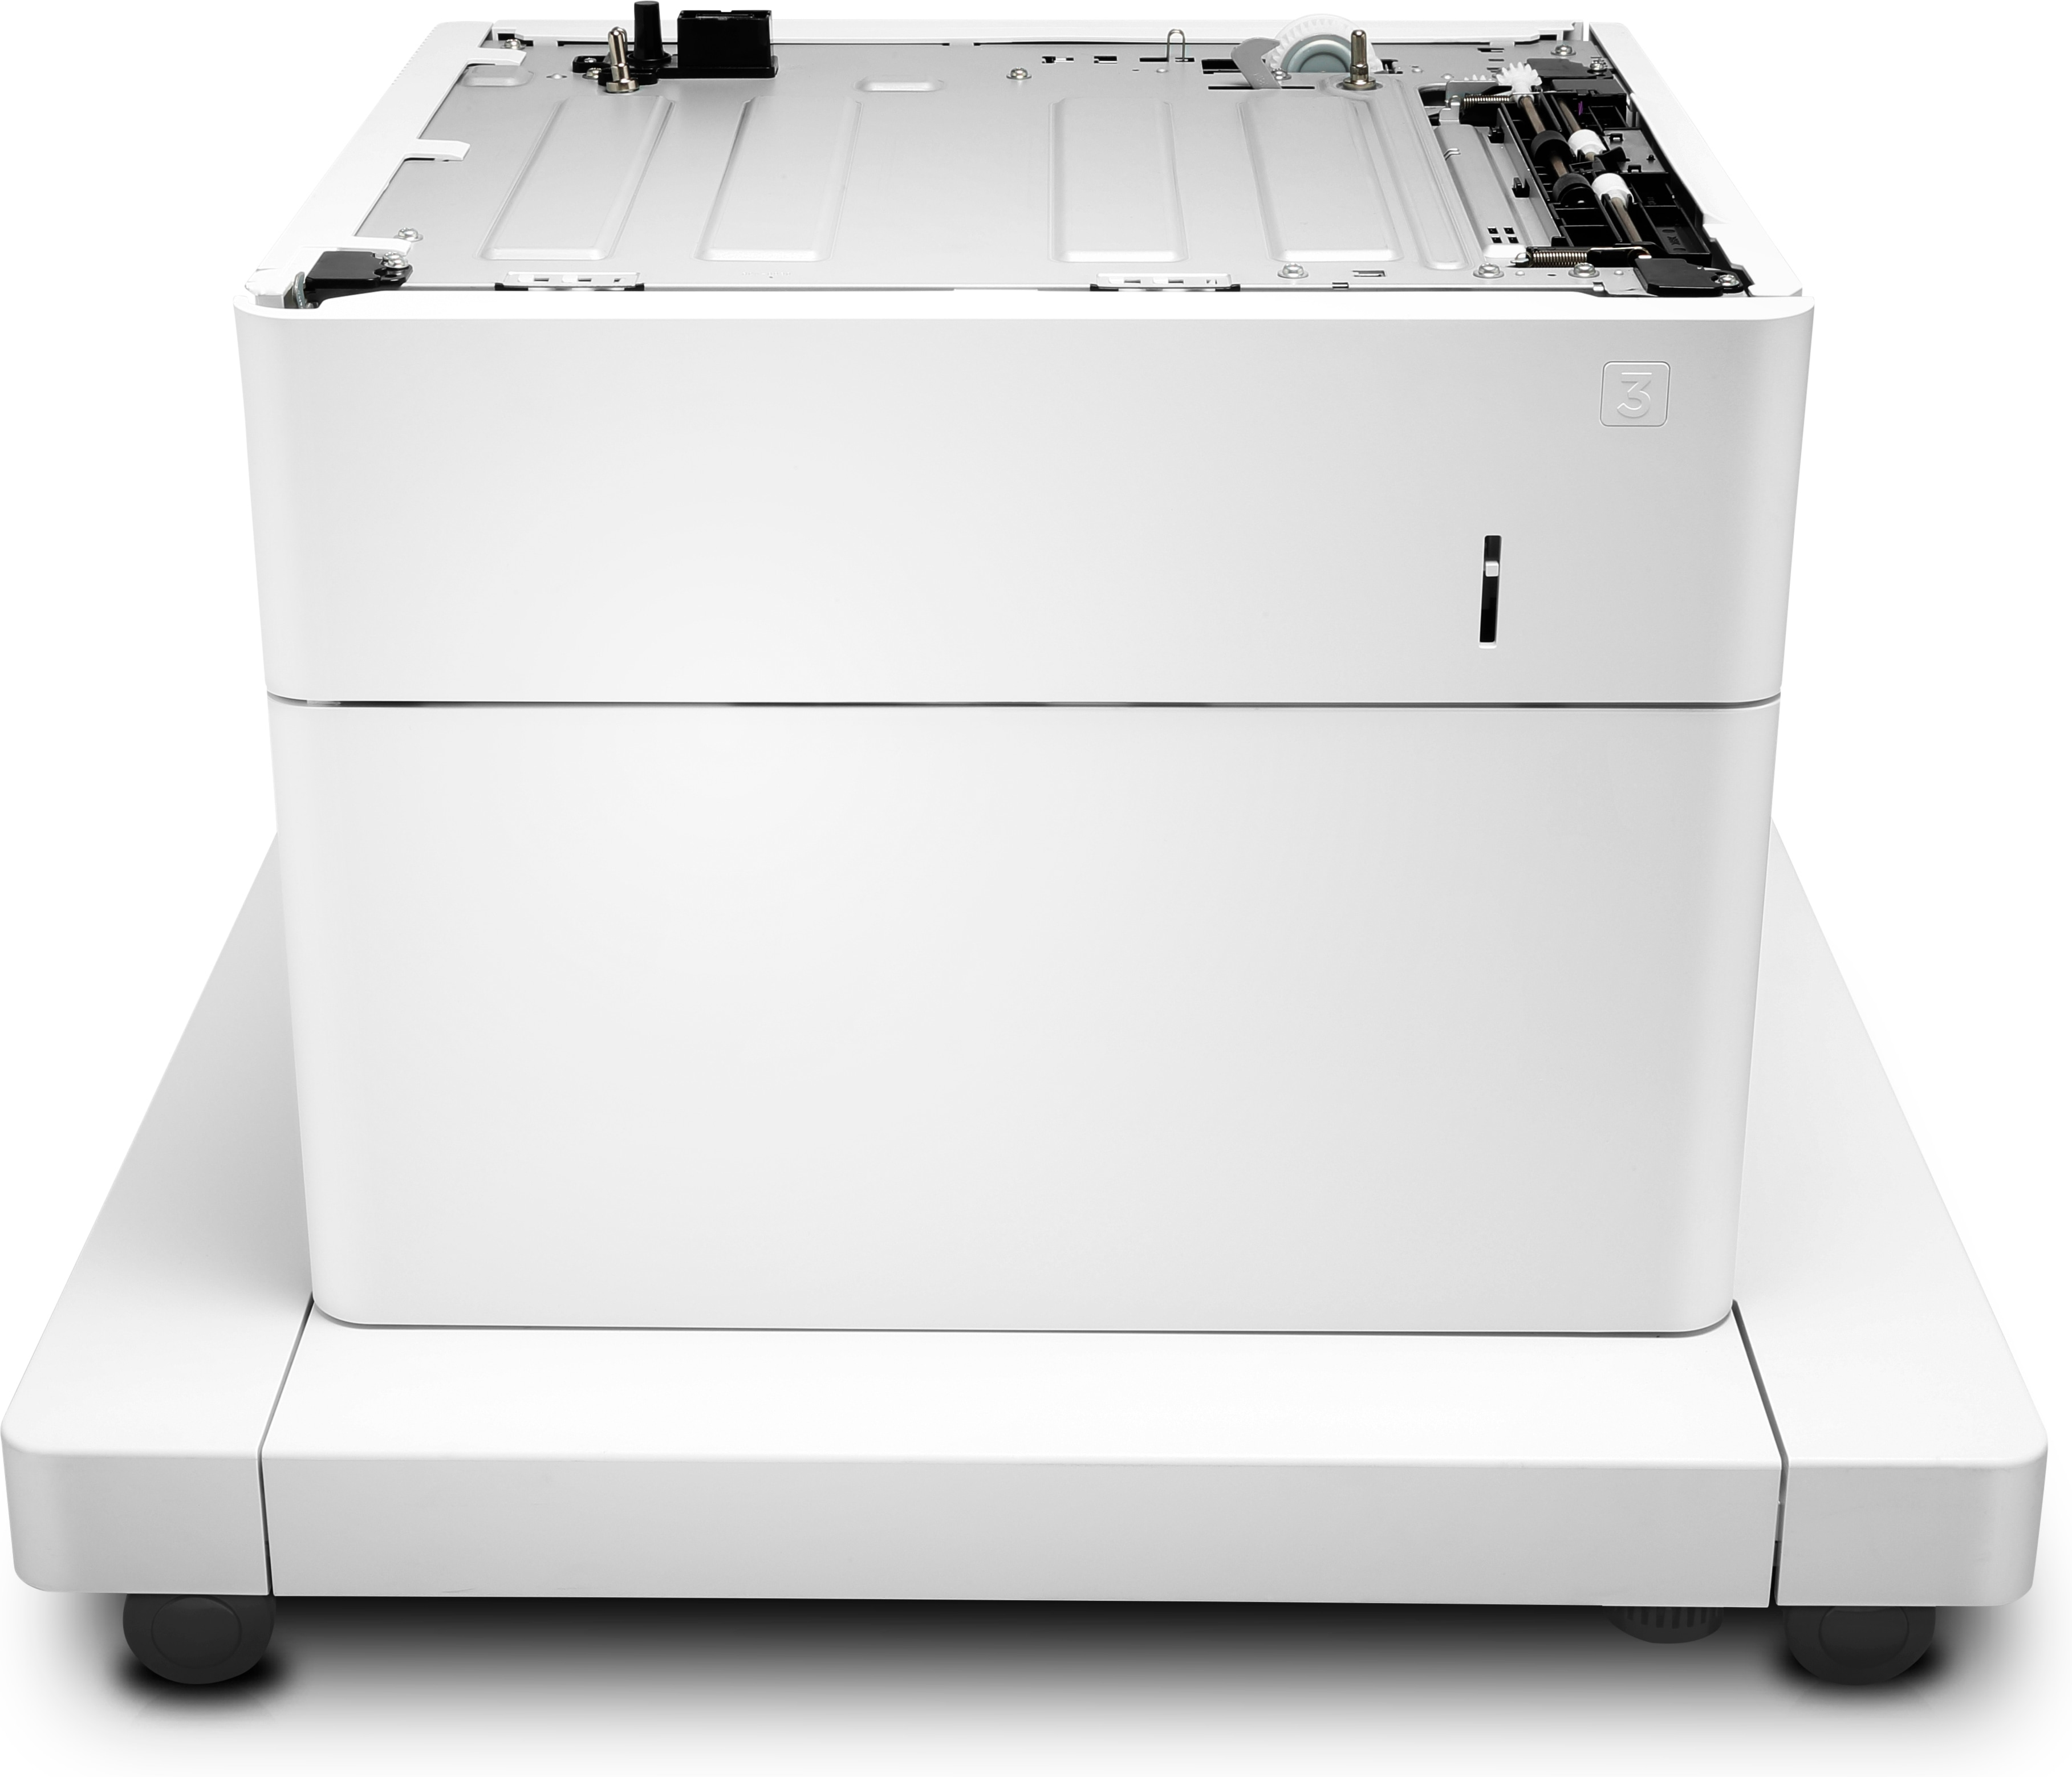 HP Papierzuführung und Schrank - Druckerbasis mit Medienzuführung - 550 Blätter in 1 Schubladen (Trays)